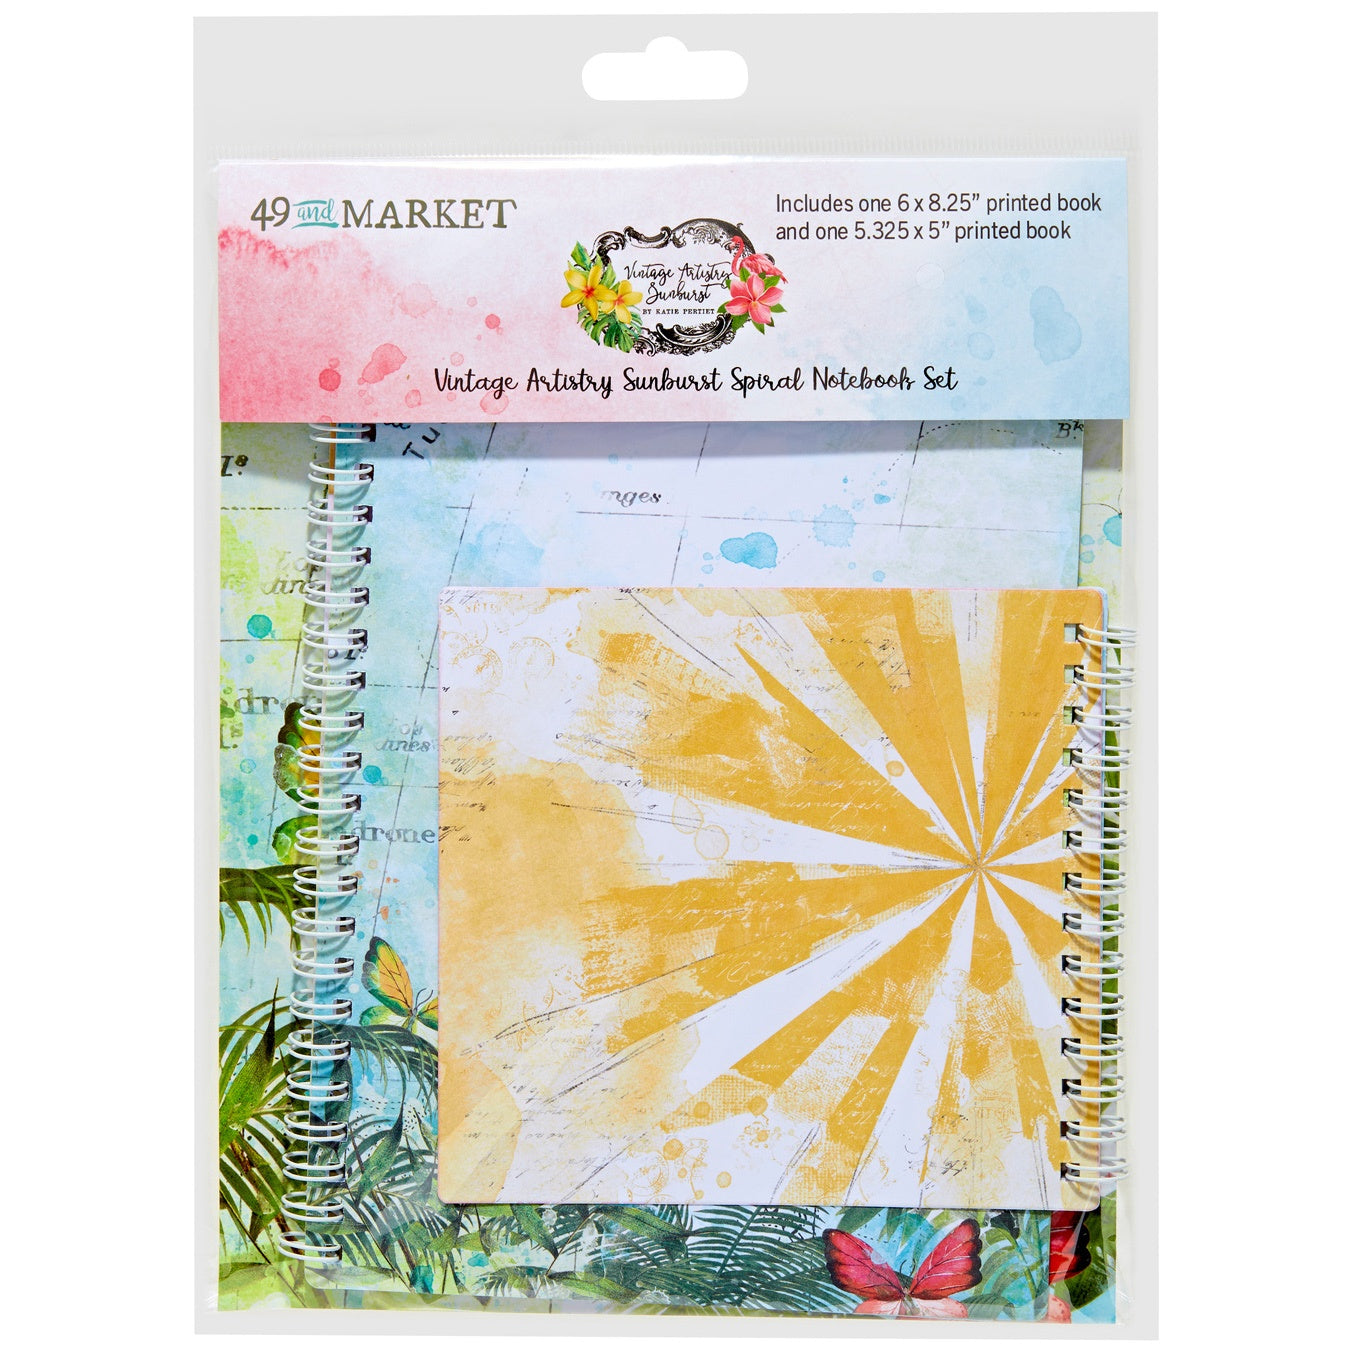 Sunburst Spiral Notebook Set in Sunburst collection by 49 & Market